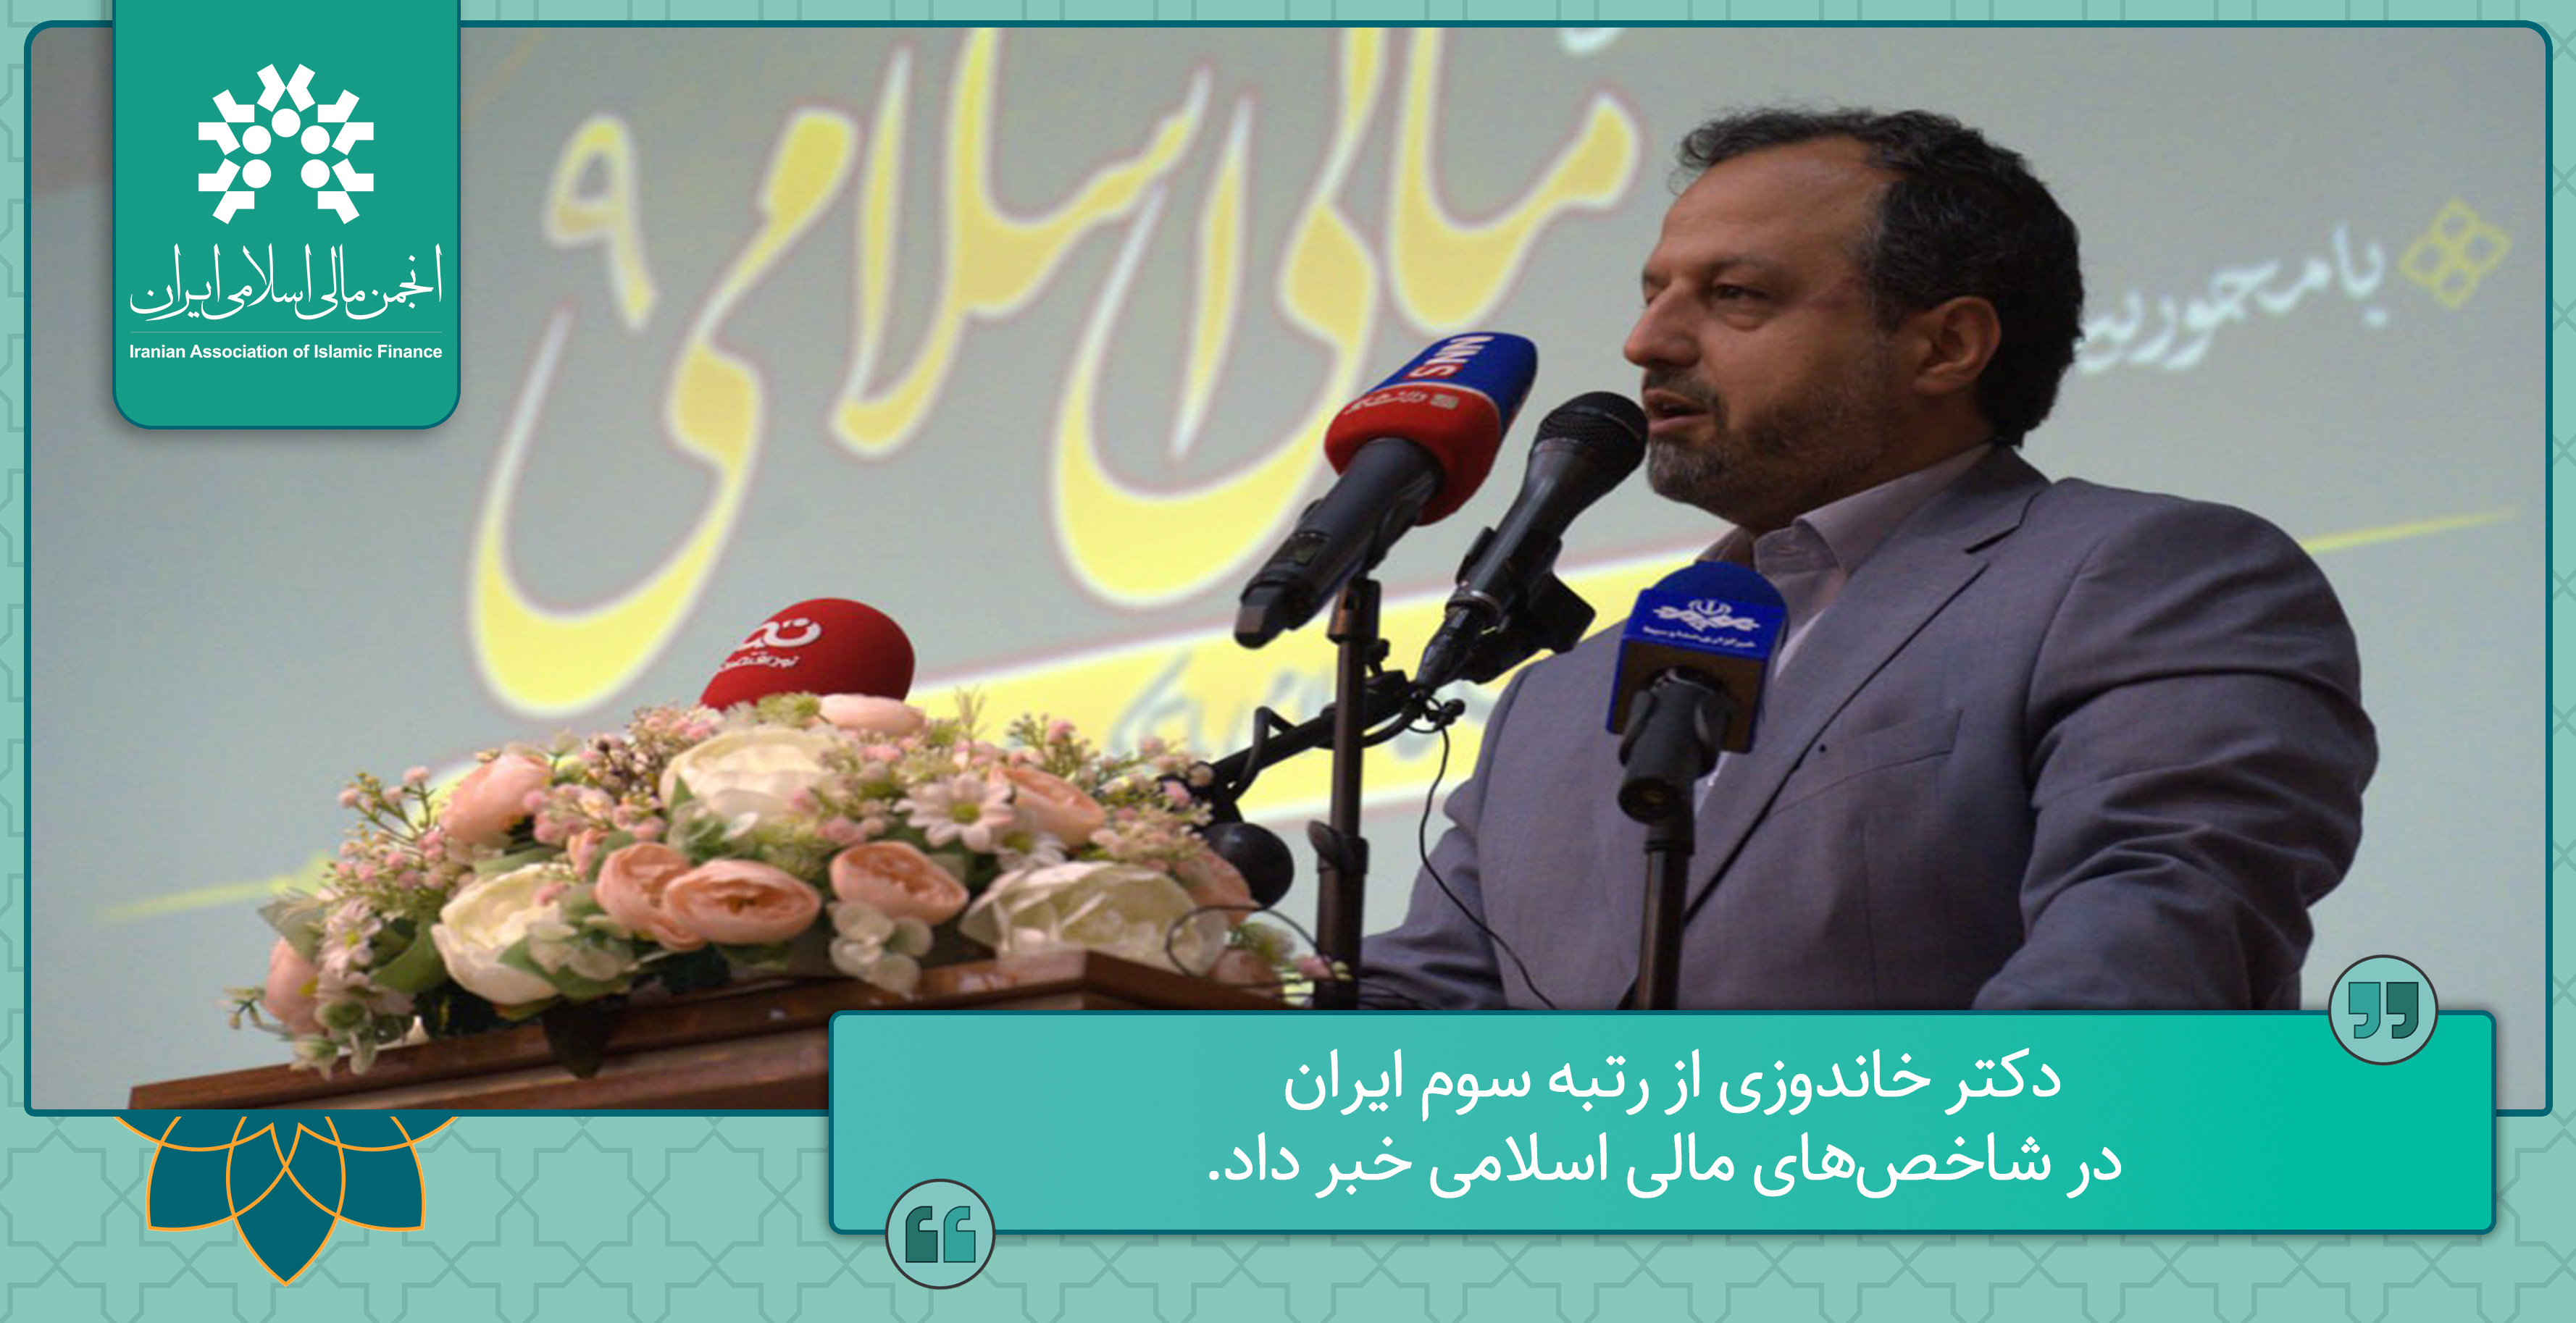 دکتر خاندوزی از رتبه سوم ایران در شاخص‌های مالی اسلامی خبر داد.